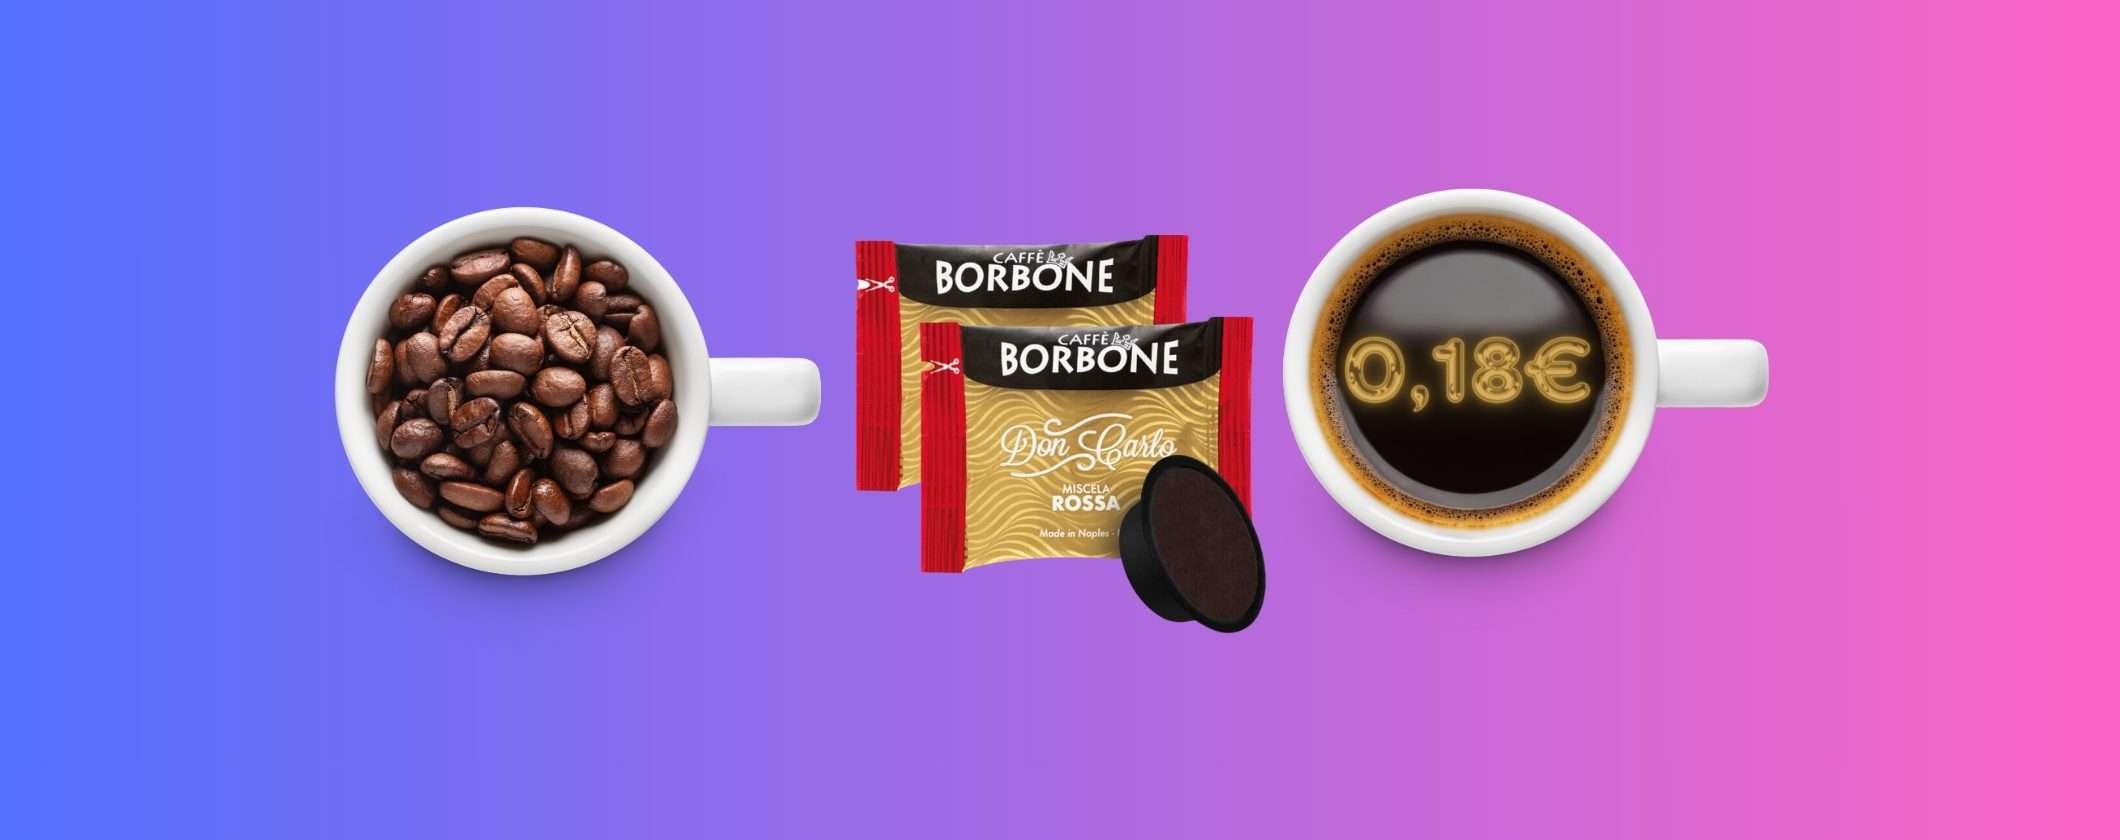 Caffè Borbone: le capsule A Modo Mio solo 18 centesimi su eBay